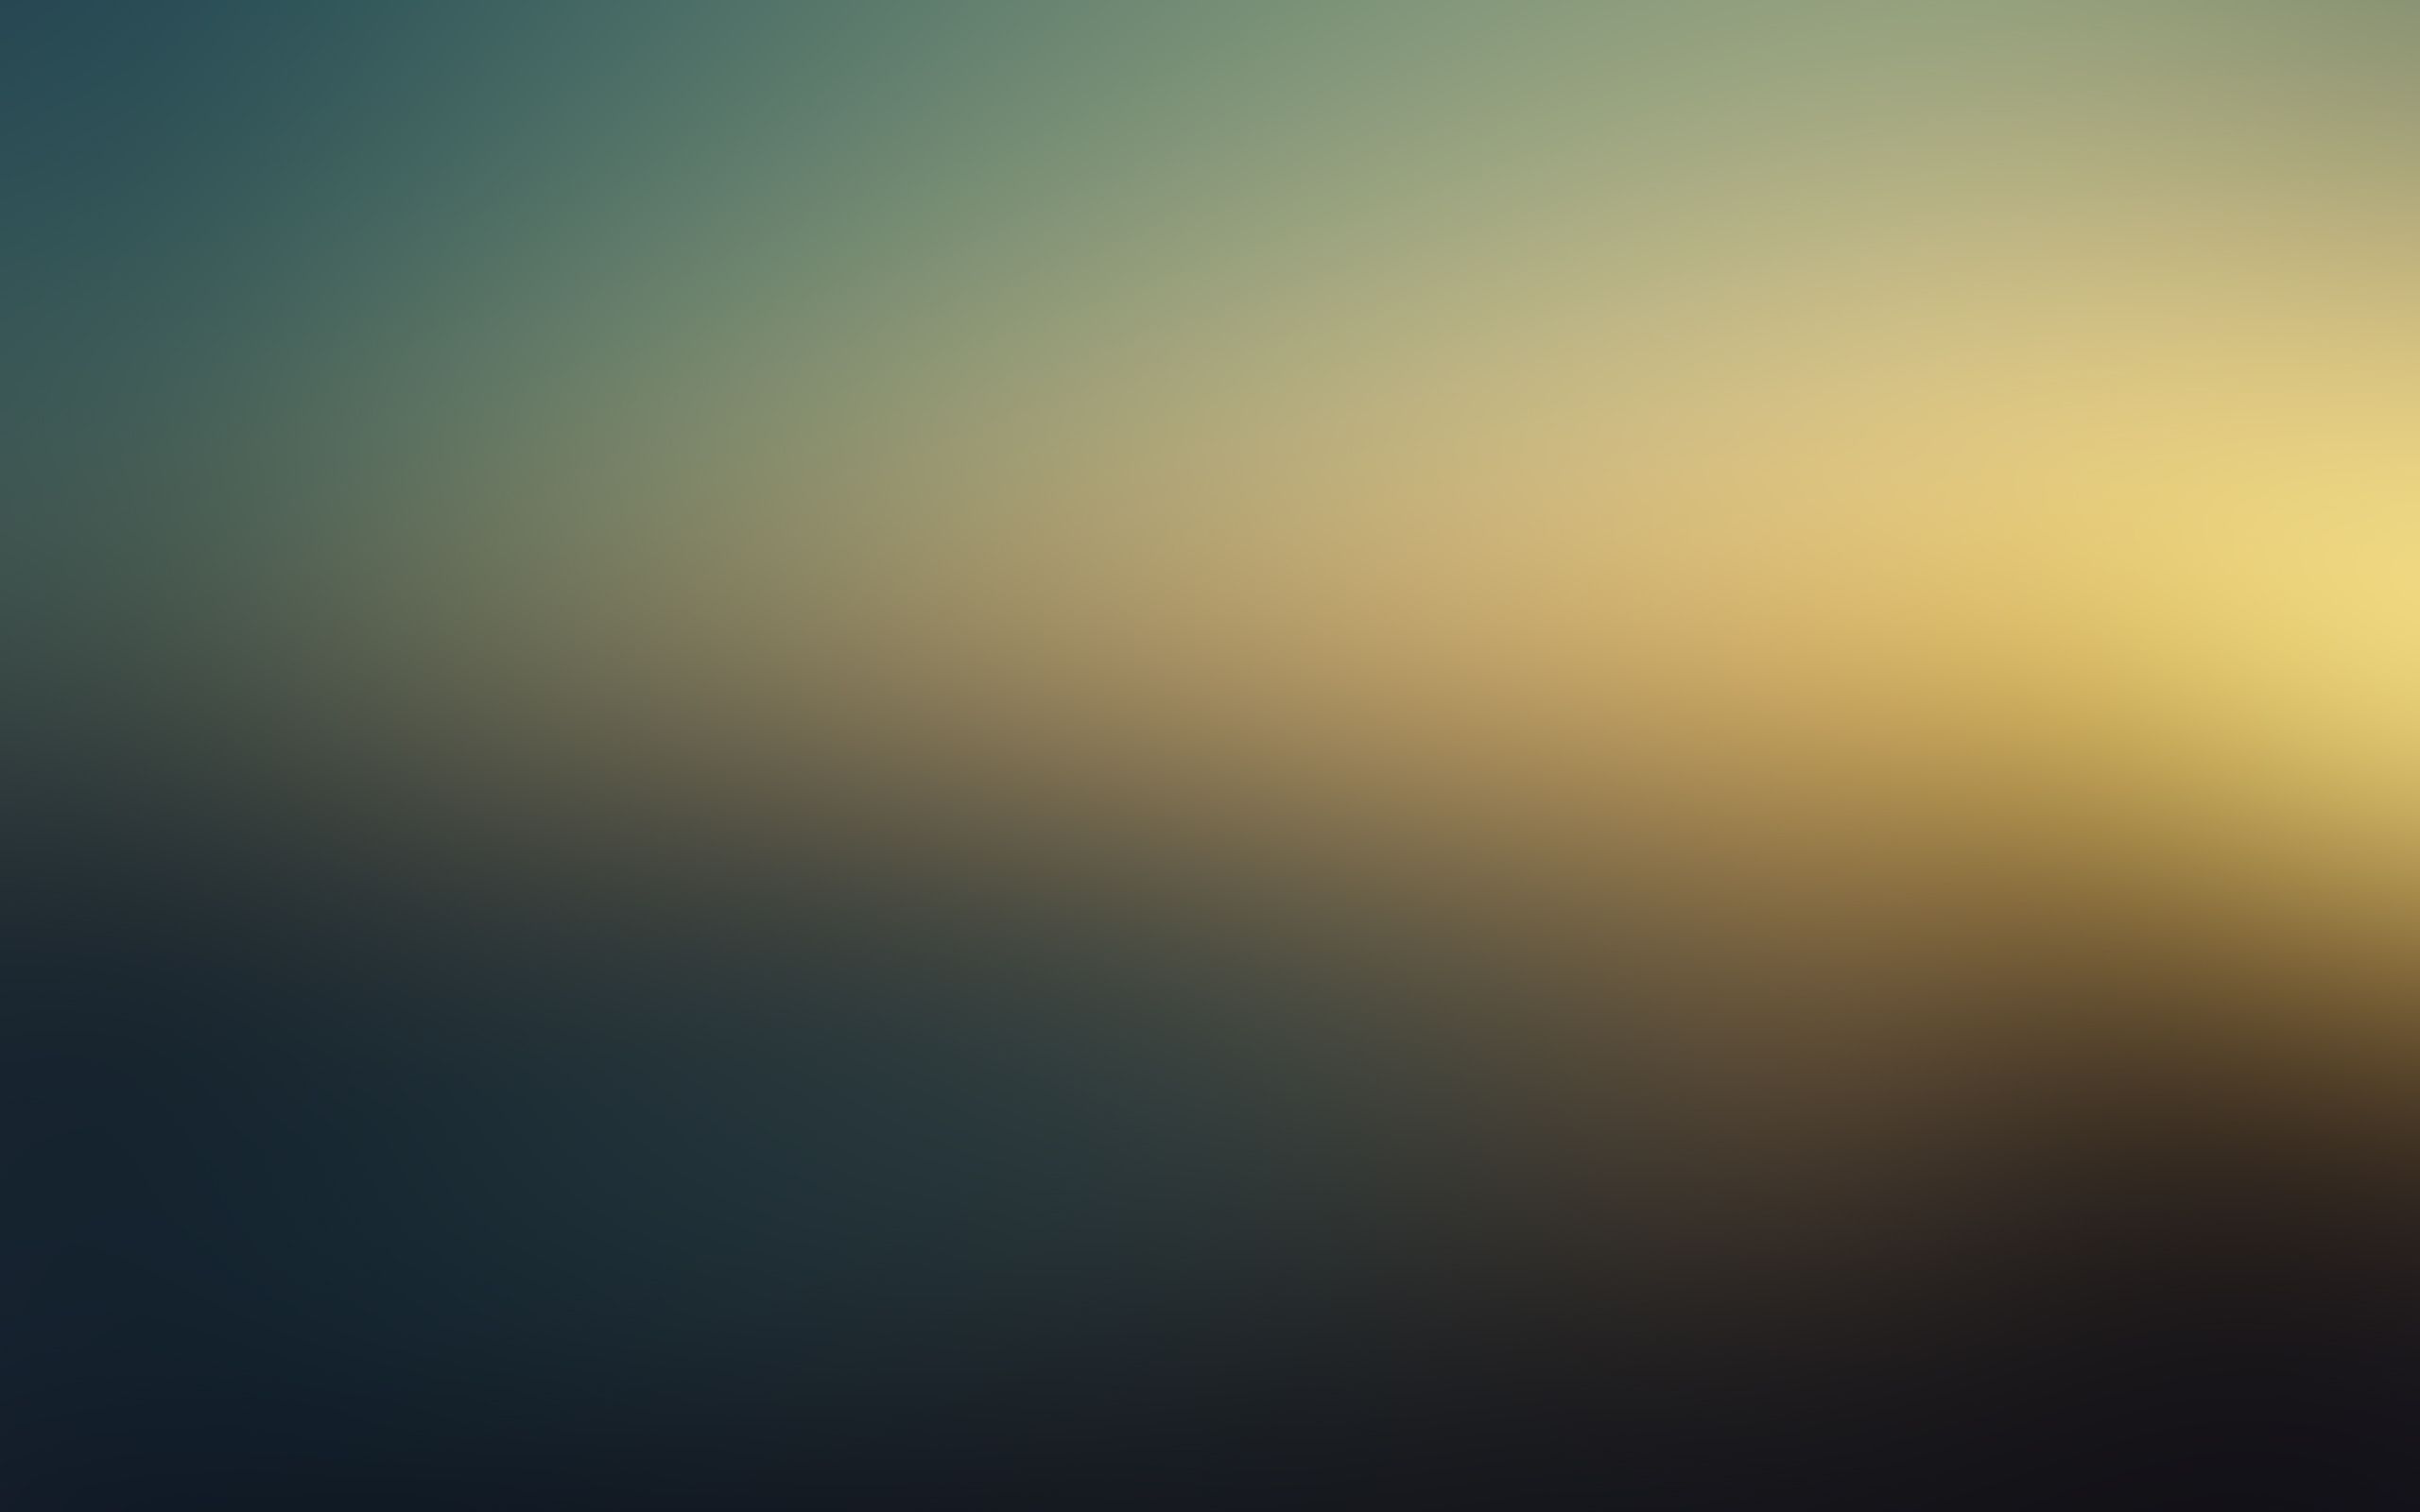 Abstract gaussian blur wallpaper 2560x1600 8673 WallpaperUP